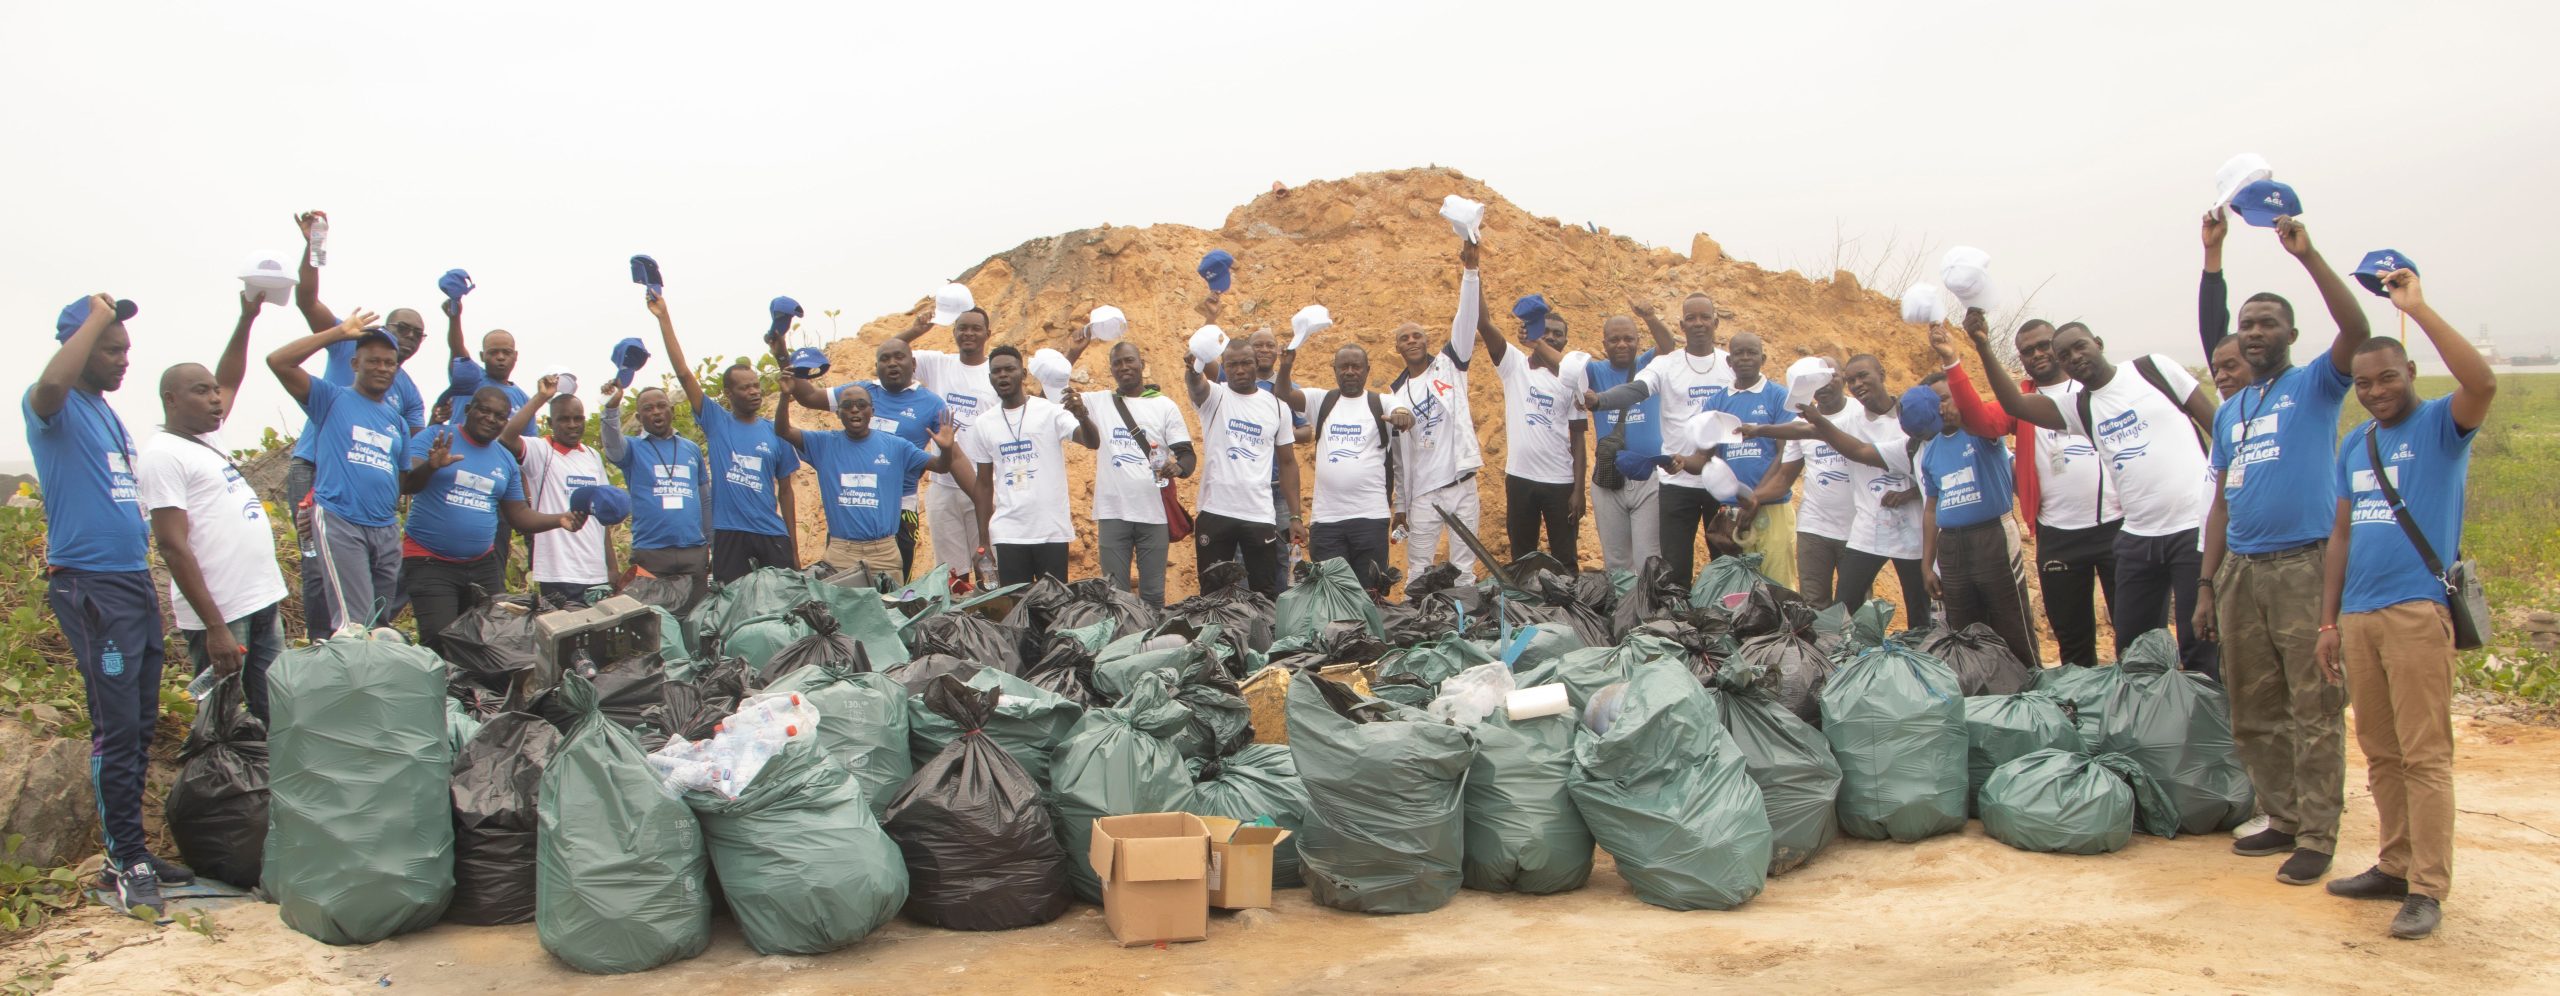 Congo Terminal et AGL Congo s’engagent dans la lutte contre le plastique